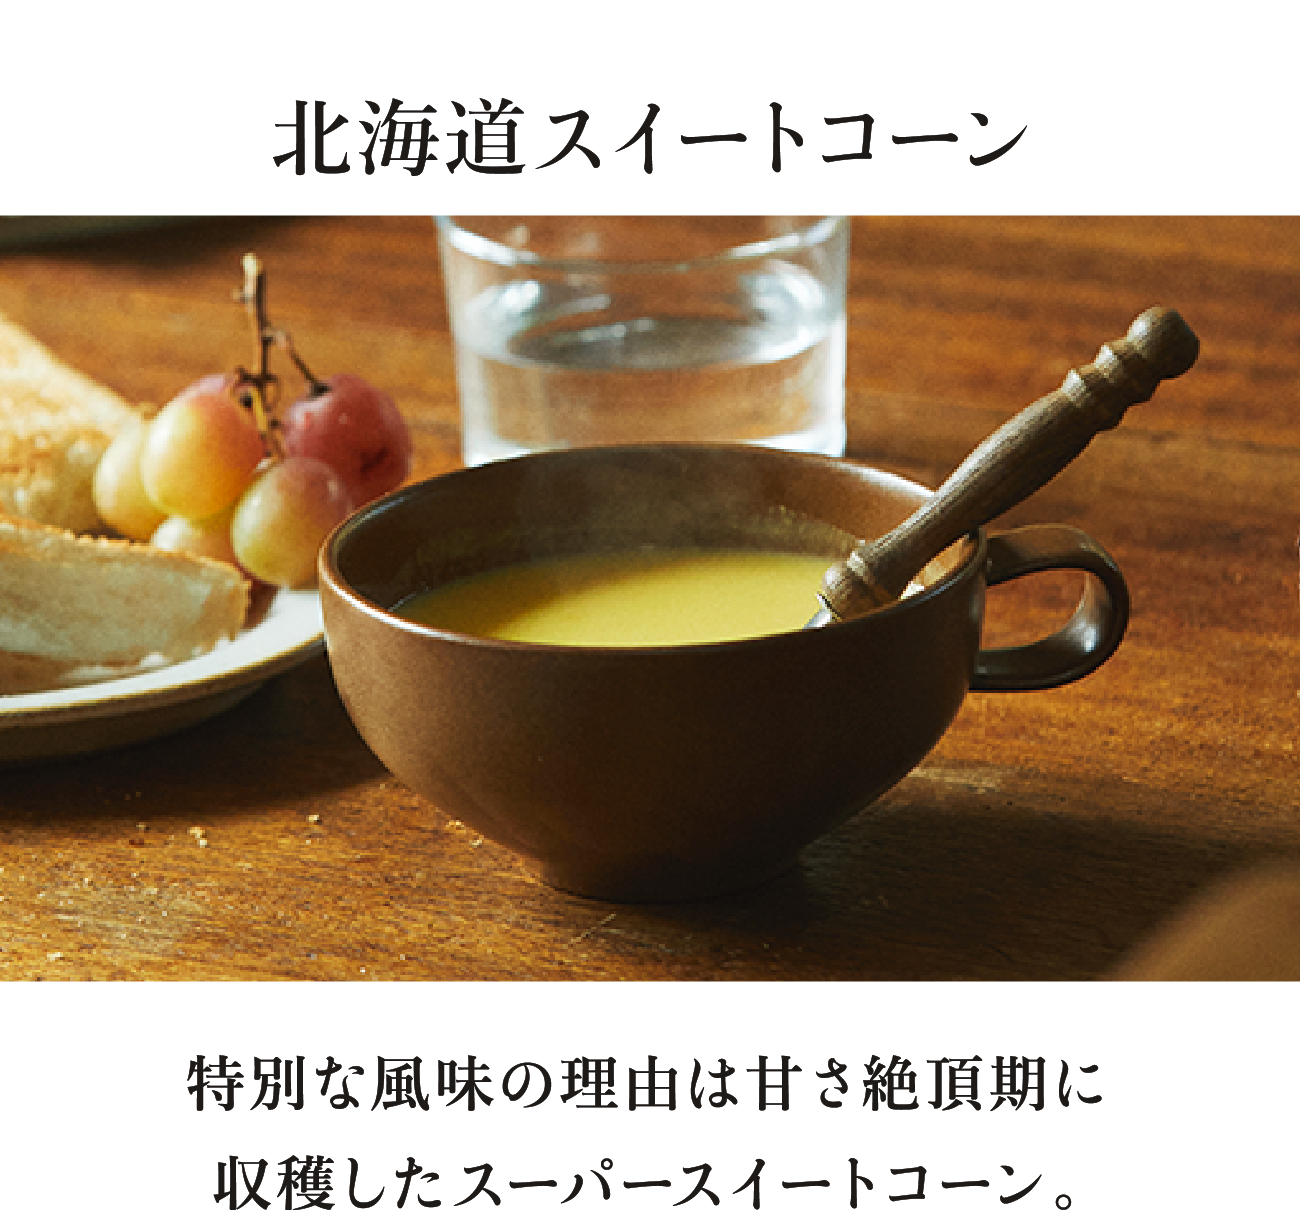 北海道スイートコーン 特別な風味の理由は甘さ絶頂期に収穫したスーパースイートコーン。